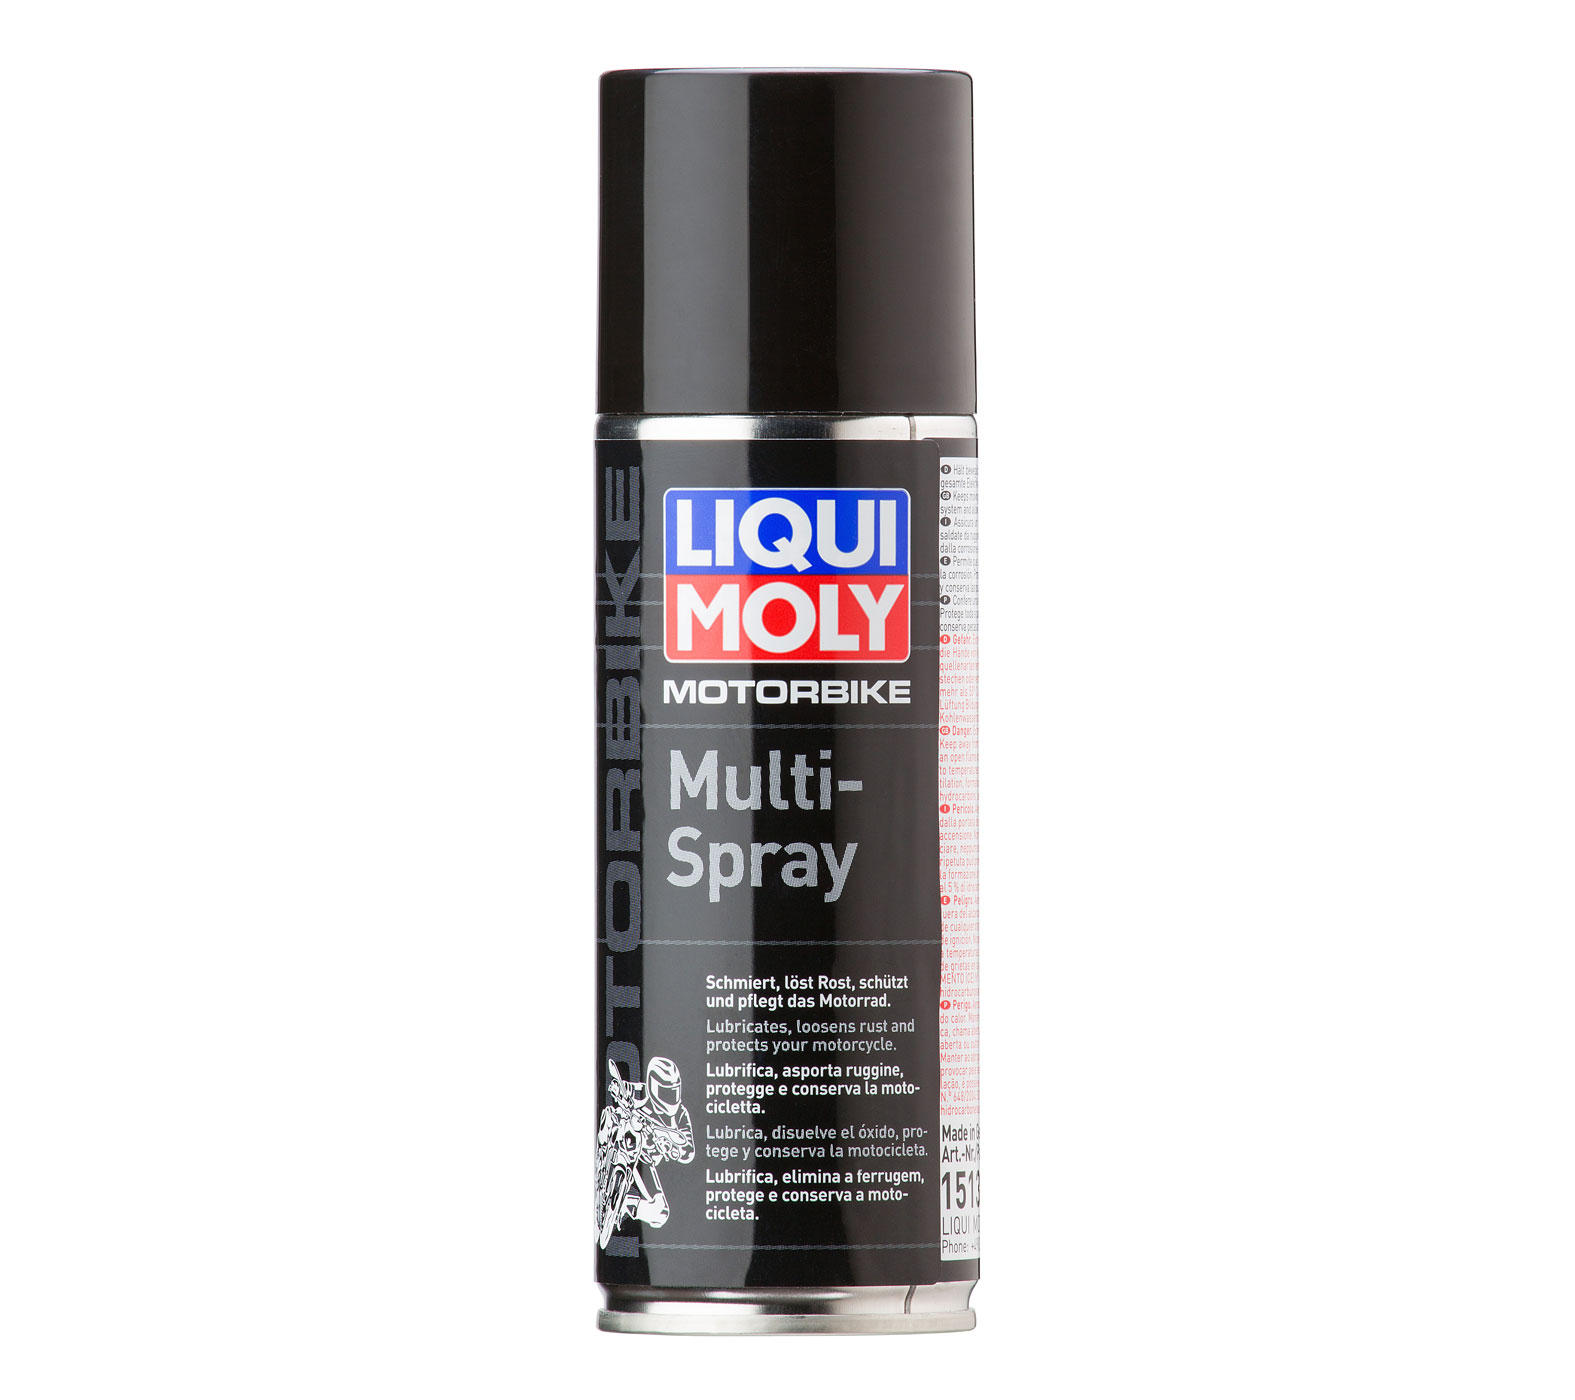 LIQUI MOLY Motorbike Multi-Spray 200 ml